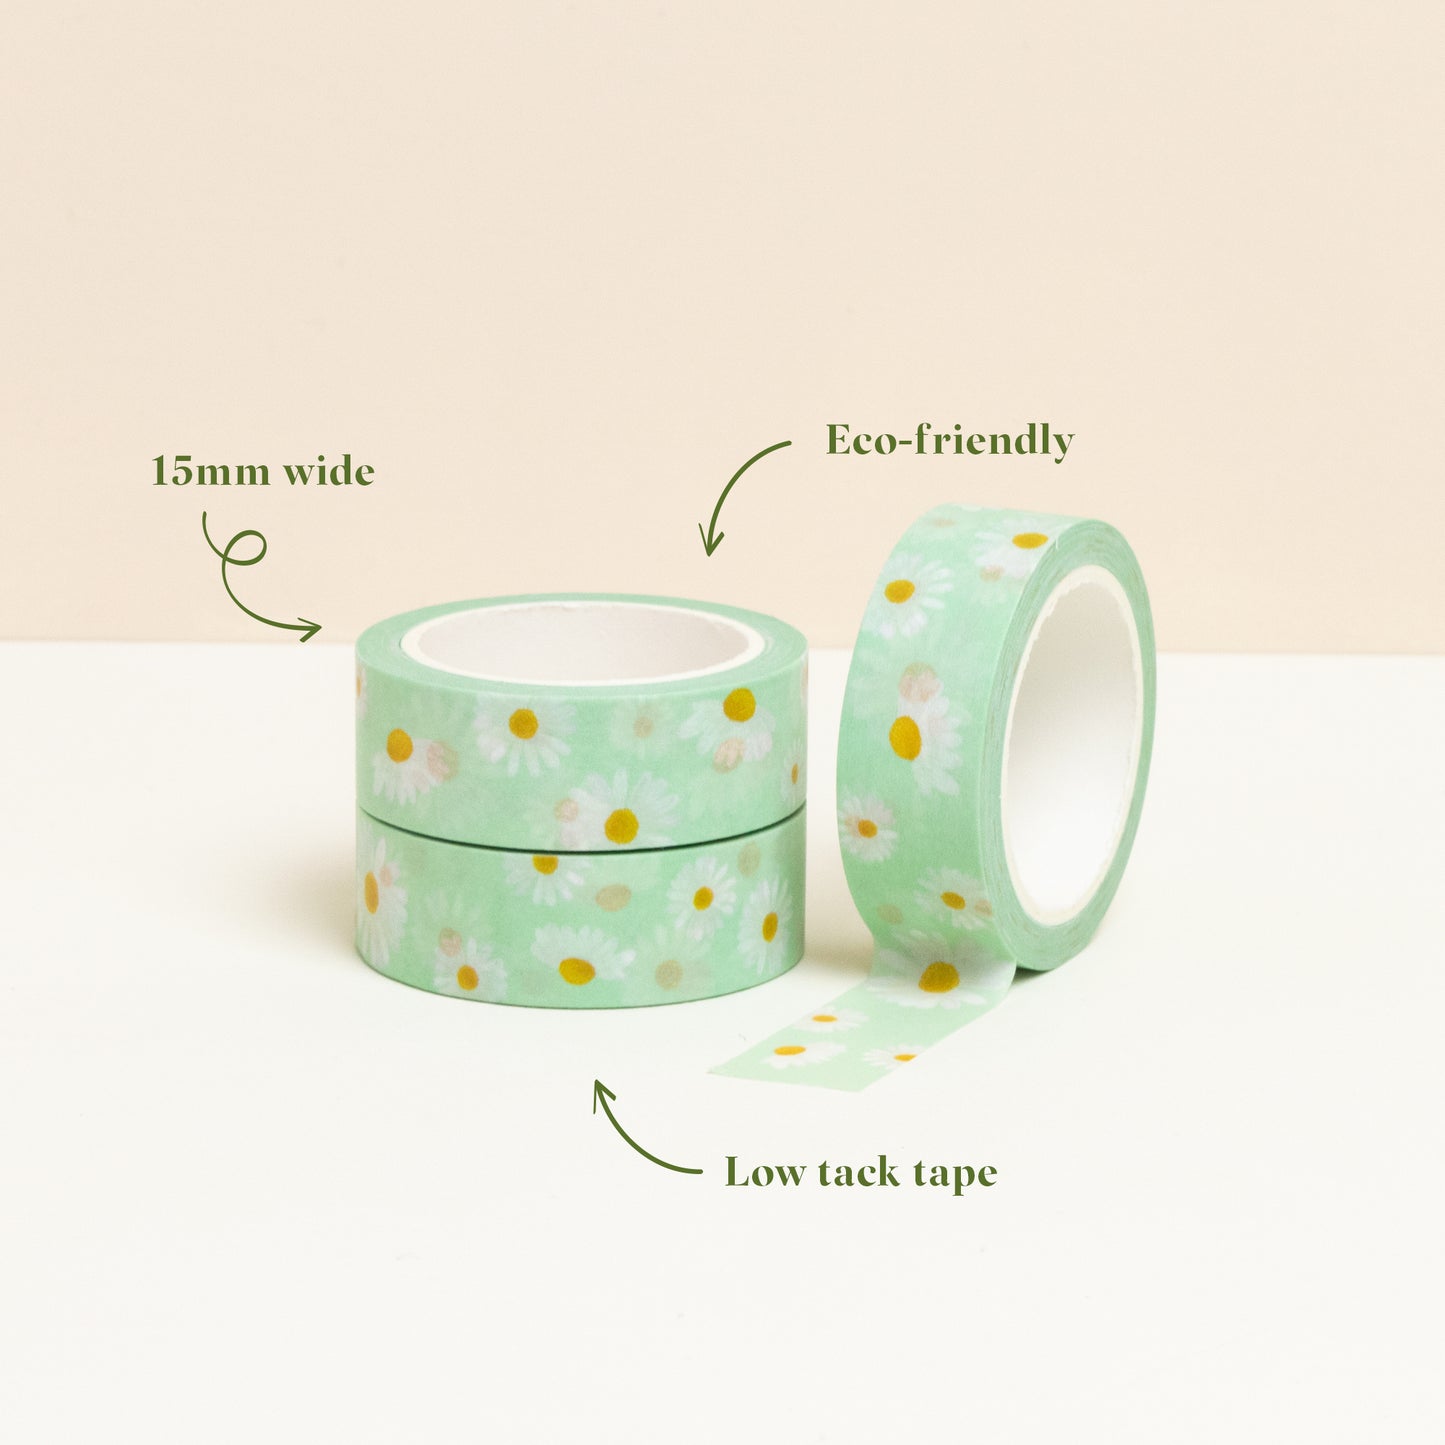 Eco-friendly daisy washi tape